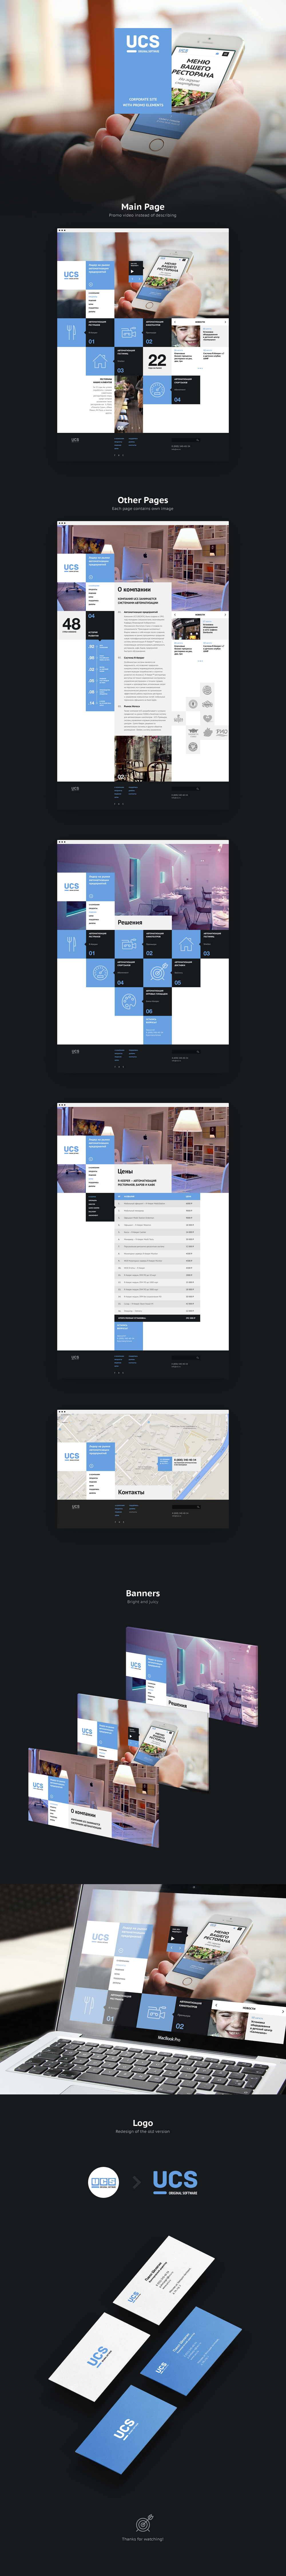 Webdesign promo promosite Website Corporate Site blue site Blue Color